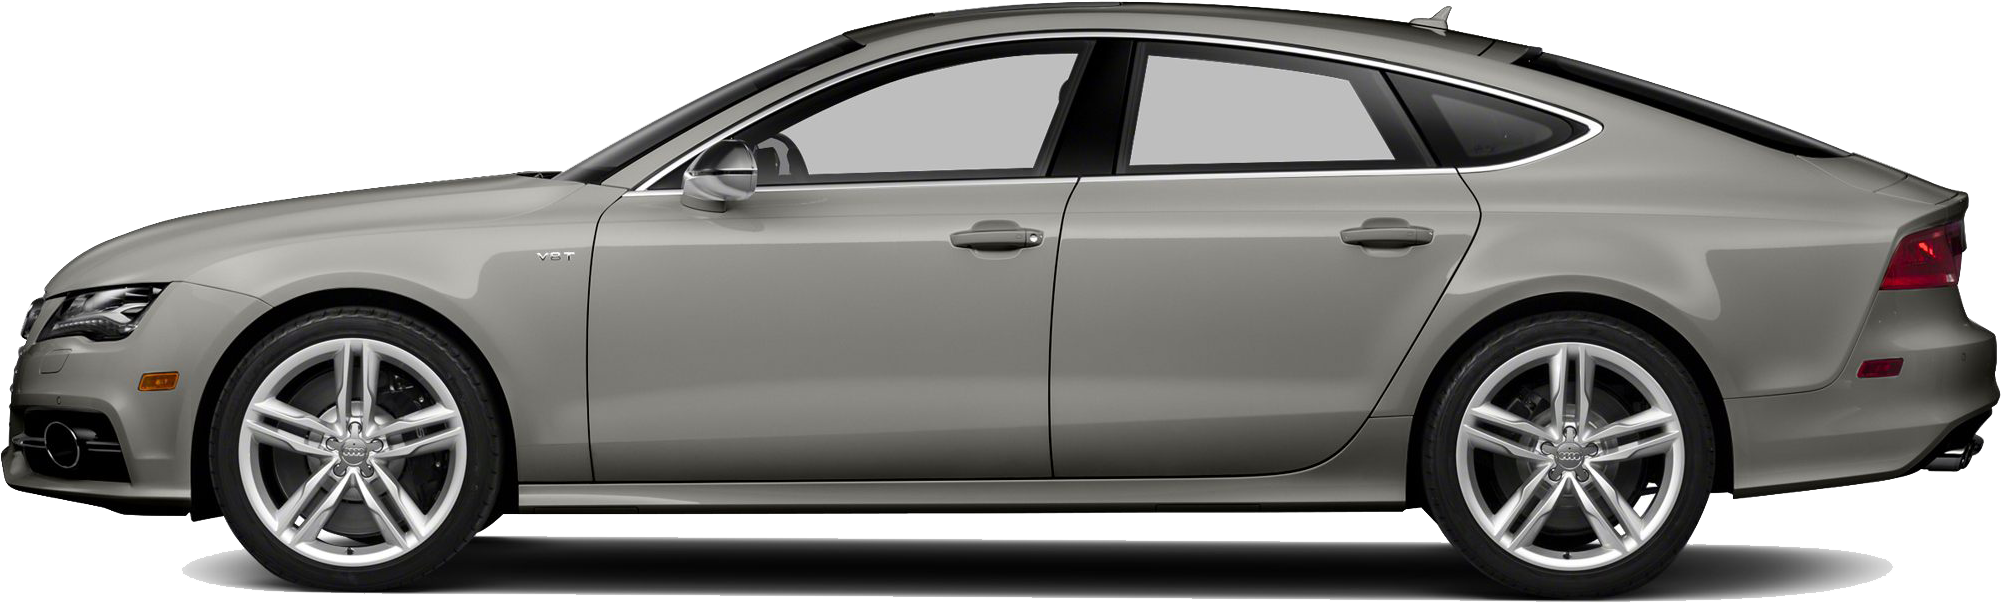 Audi Luxury Sedan Side View PNG